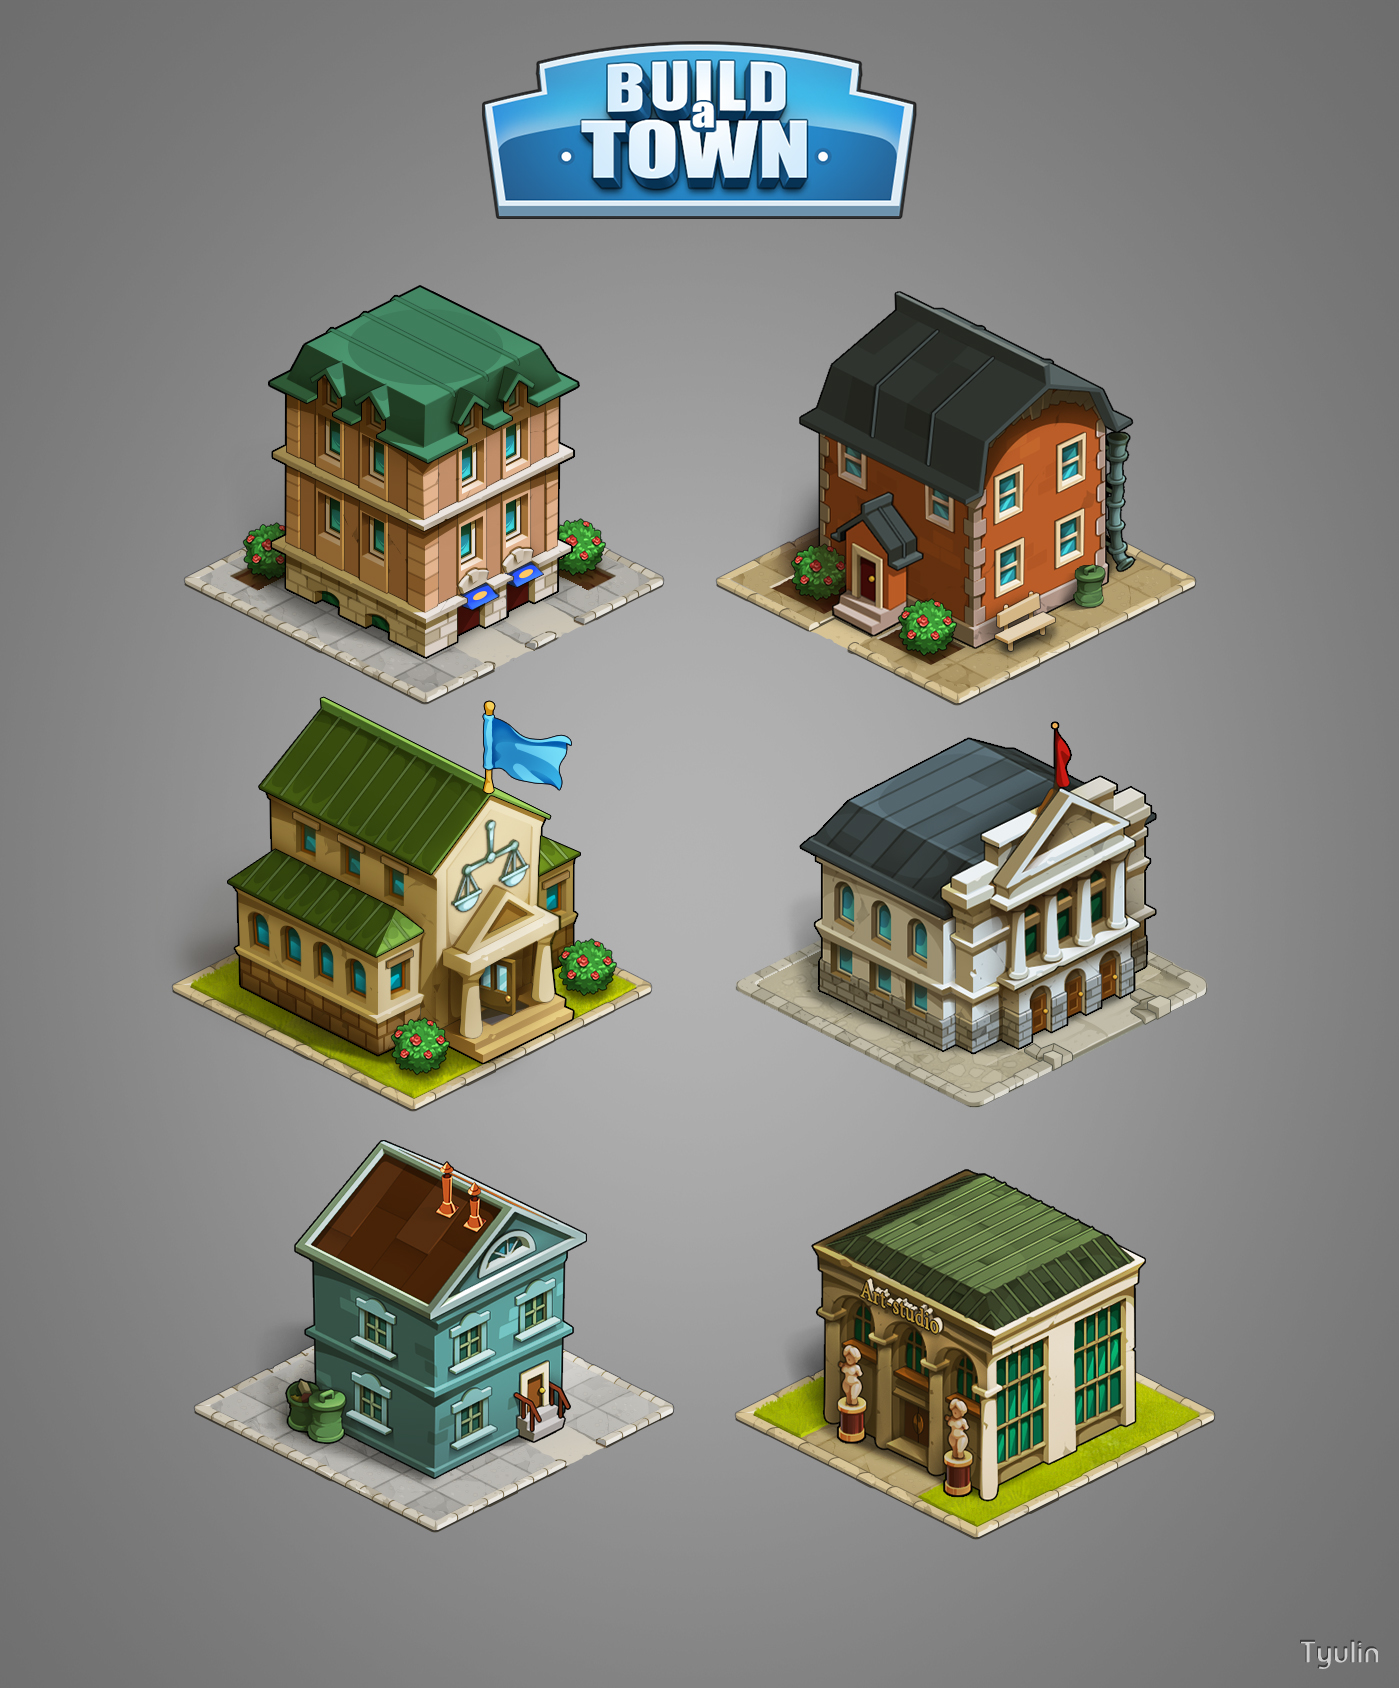 Built this town. Здания в играх. Здания казуальная Графика. Здания для 2d игр. Казуальная игра здания.